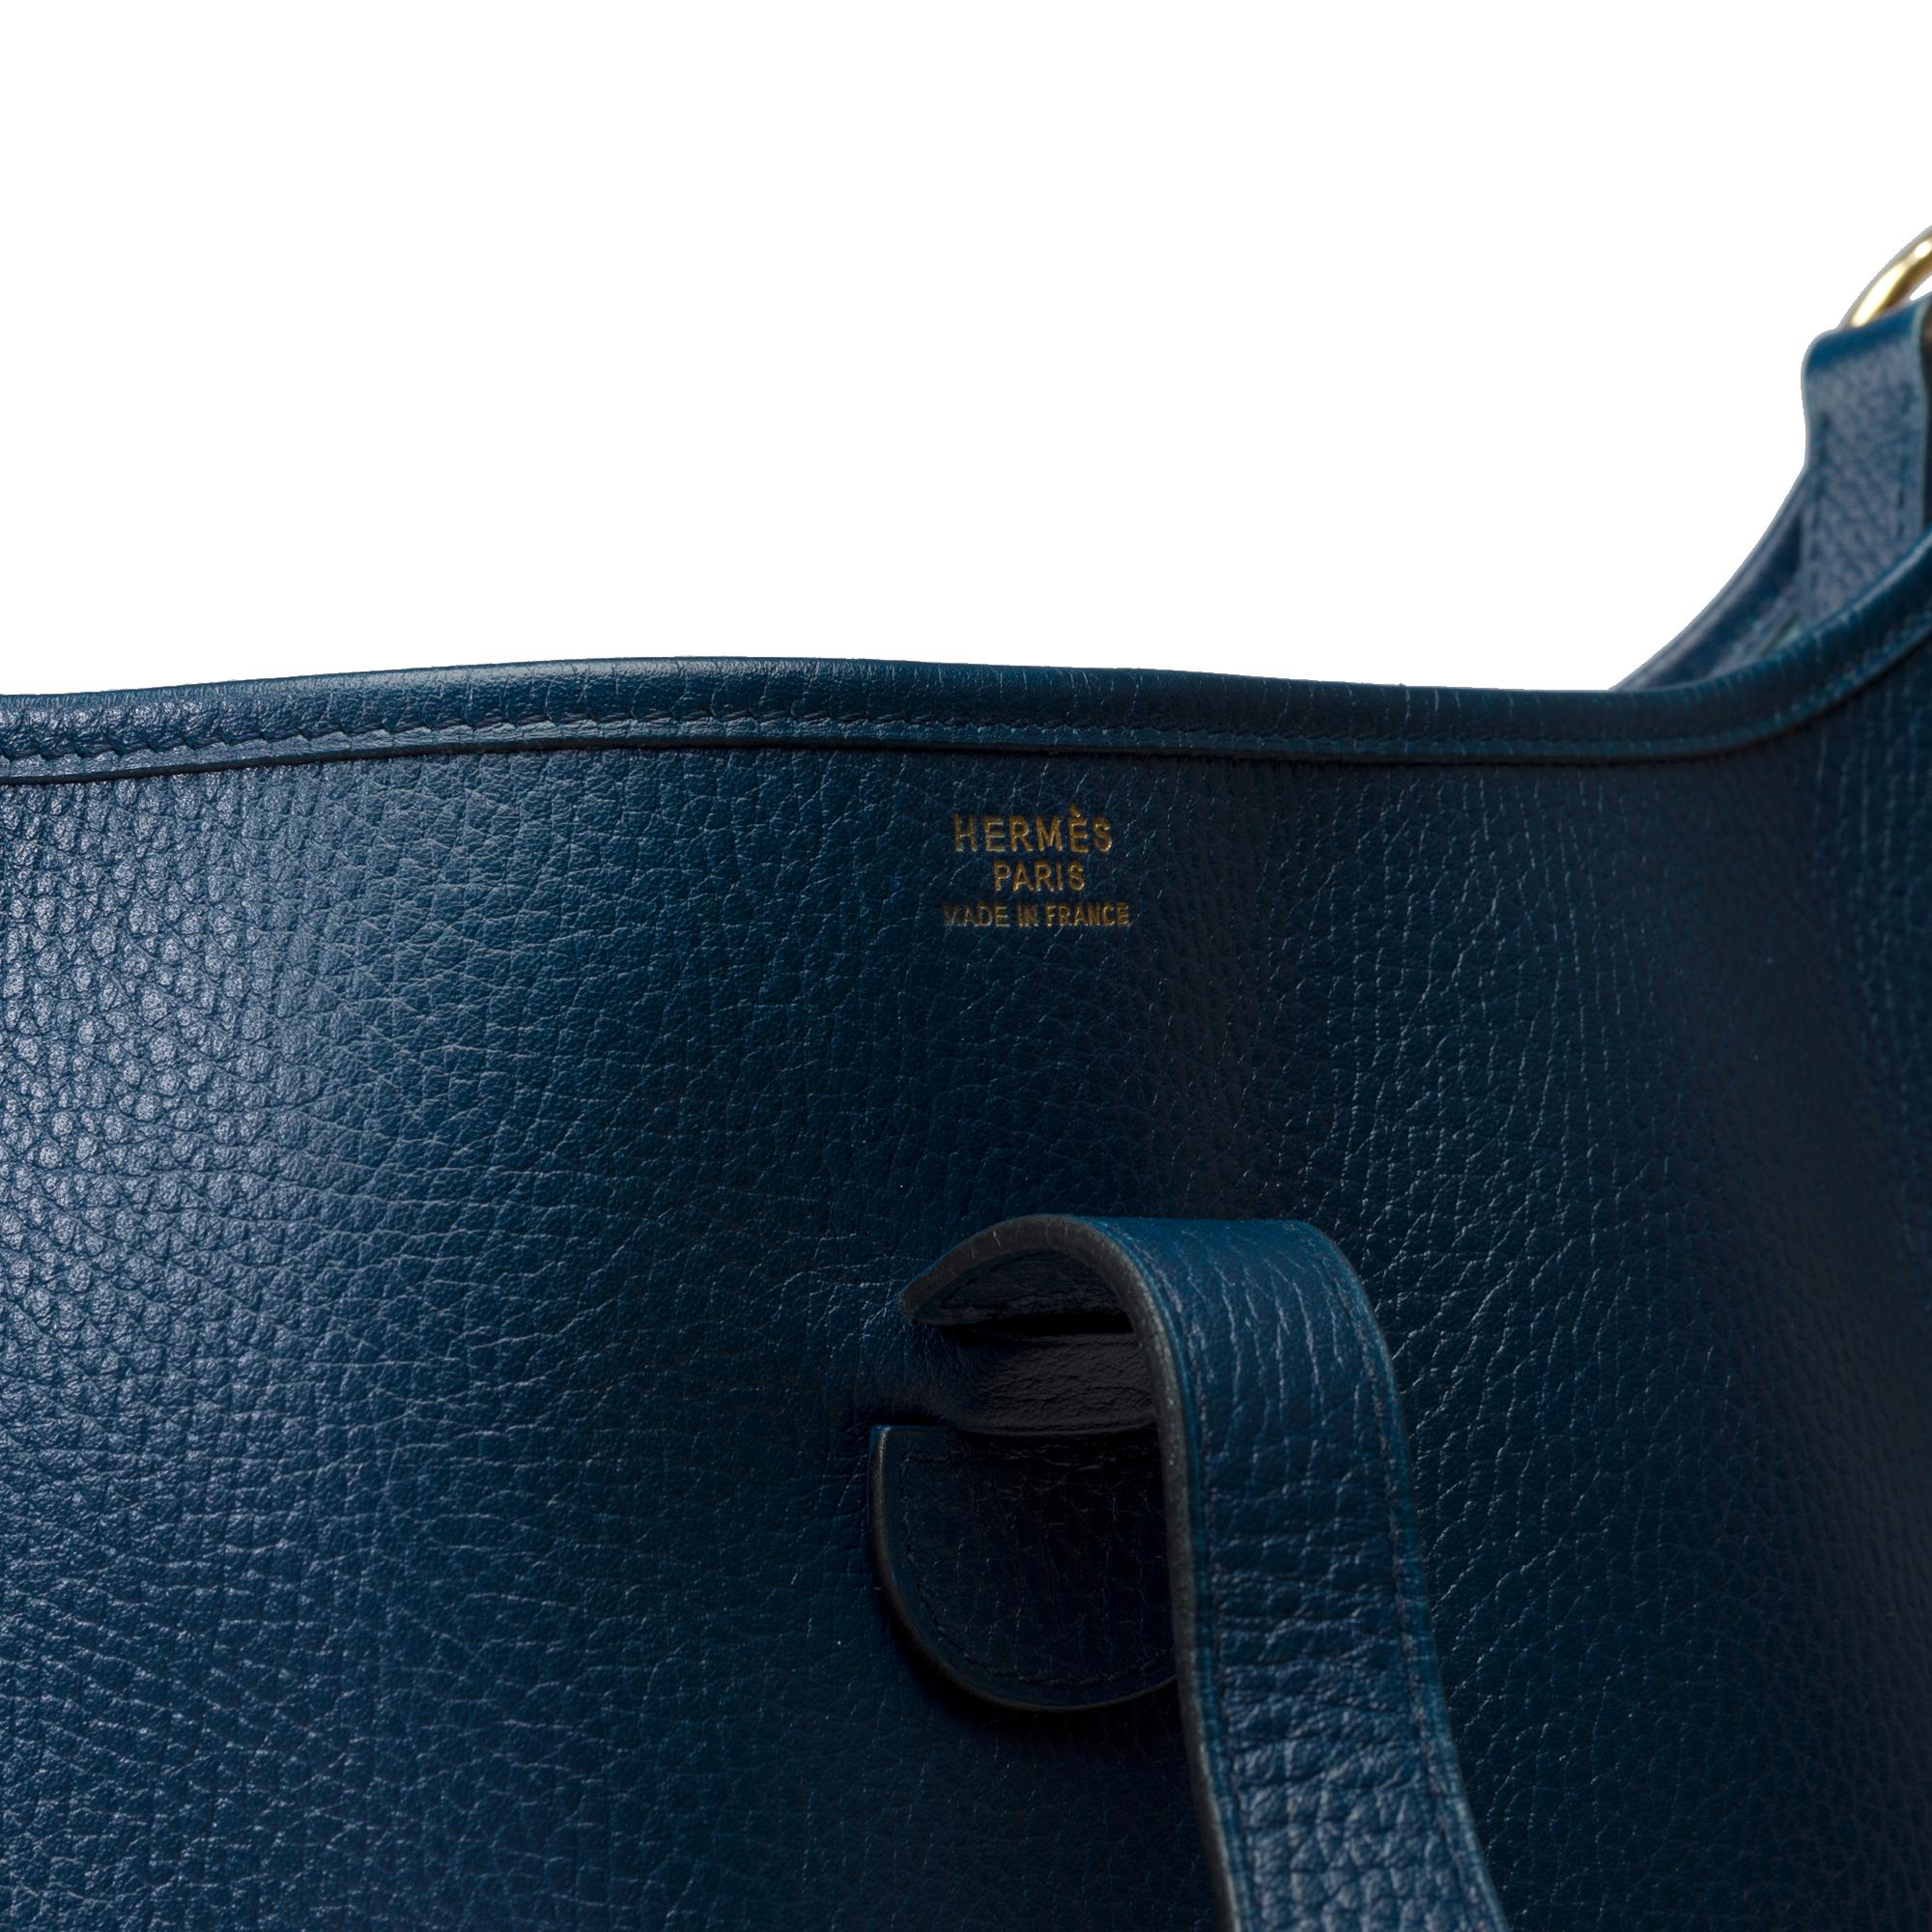 Hermès Evelyne GM  shoulder bag in Navy Blue Taurillon Clemence leather, GHW For Sale 4